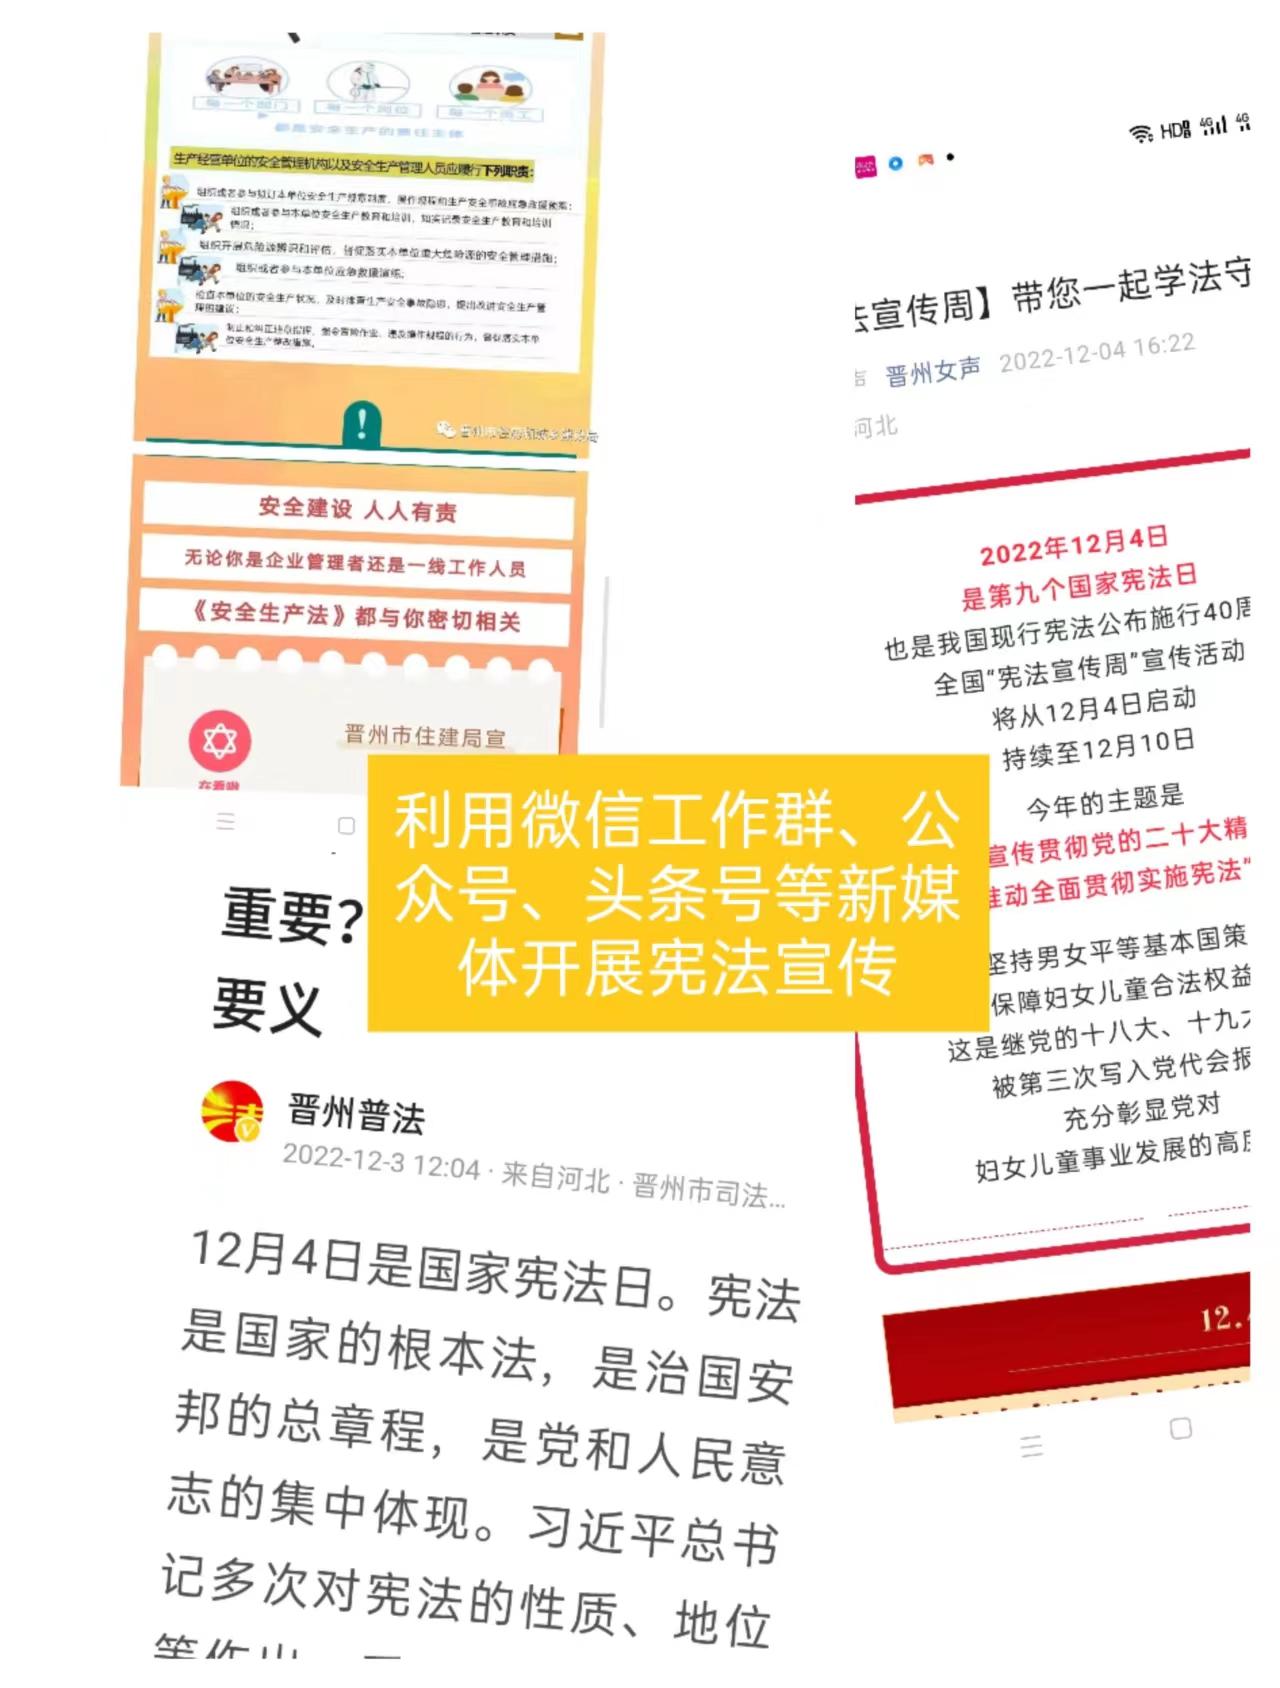 晋州市开展“宪法宣传周”线上学习宣传活动